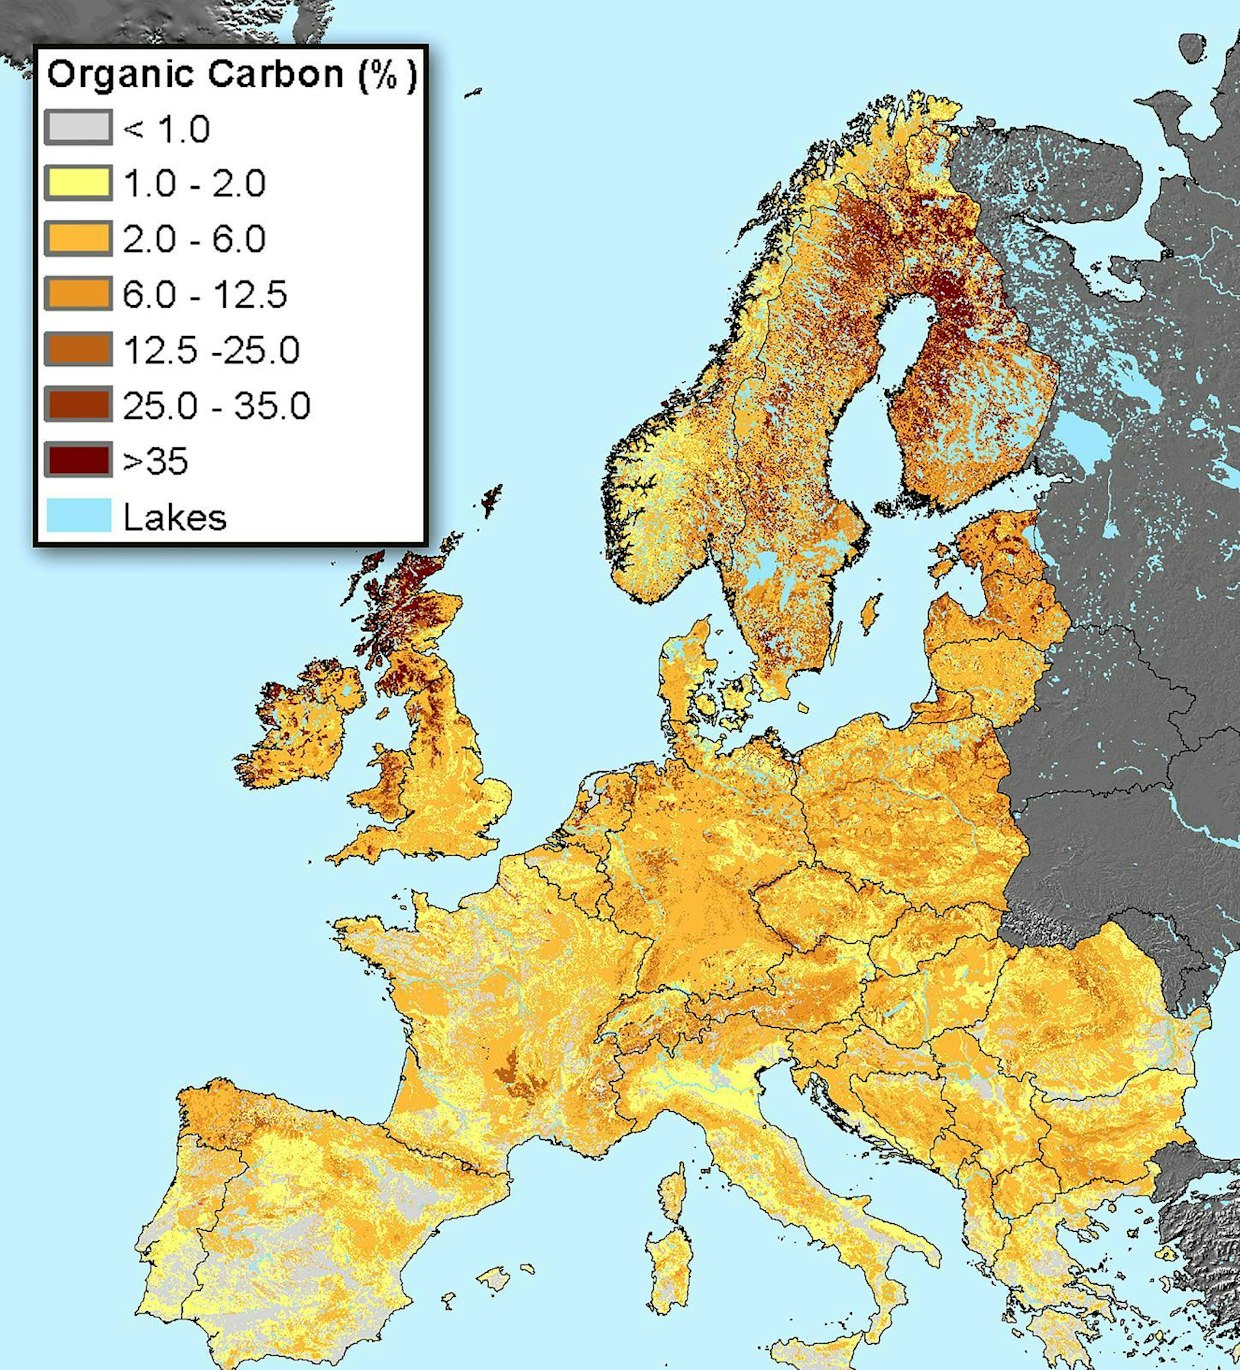 Euroopan maa-alan hiilipitoisuutta kuvaava kartta kertoo, miten varsinkin eteläisen Euroopan maaperä on köyhtynyt. Skandinaviassa multavien maalajien ja soiden merkittävä osuus sen sijaan näkyy selvästi.